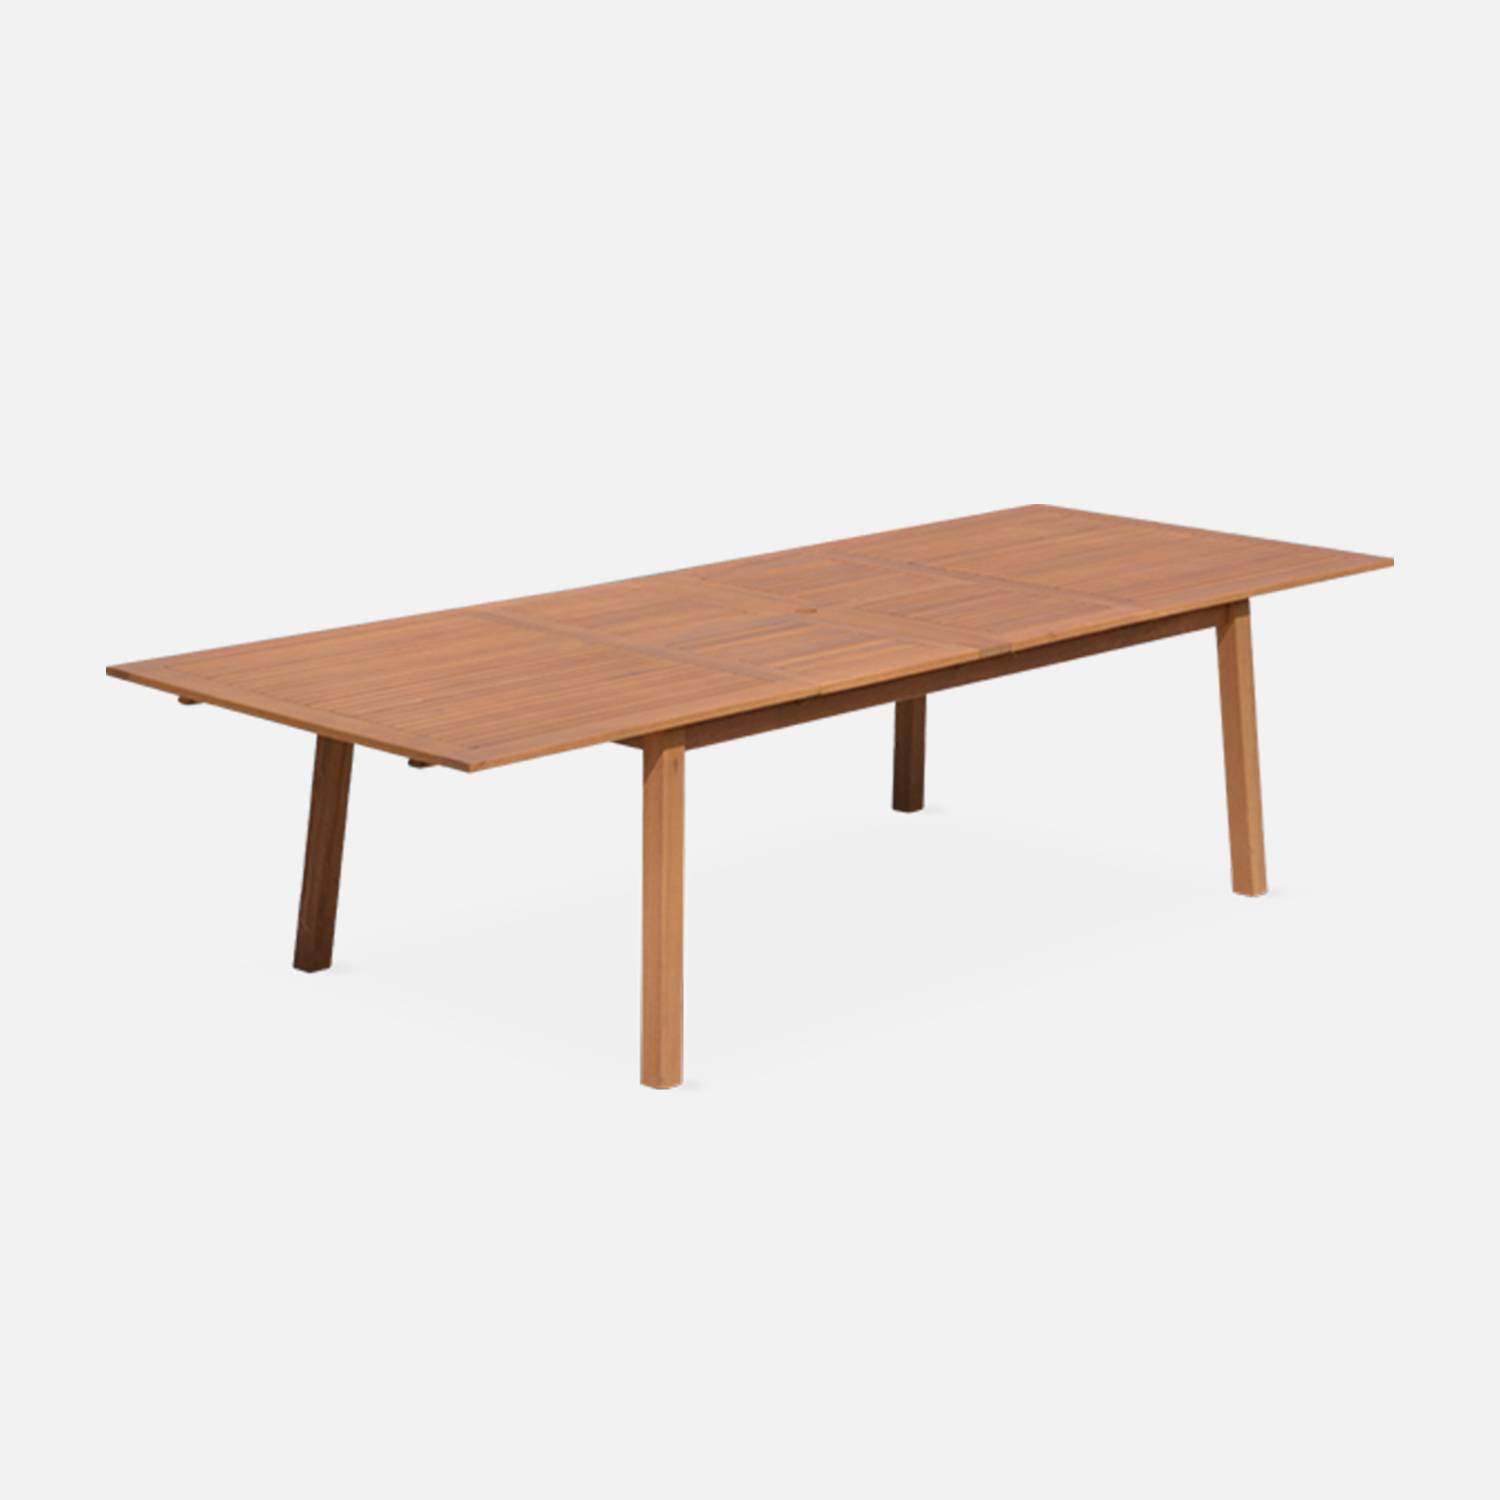 Tavolo da giardino in legno, dimensioni: 200-250-300cm - modello: Almeria - Grande tavolo rettangolare con prolunga, in eucalipto FSC Photo1